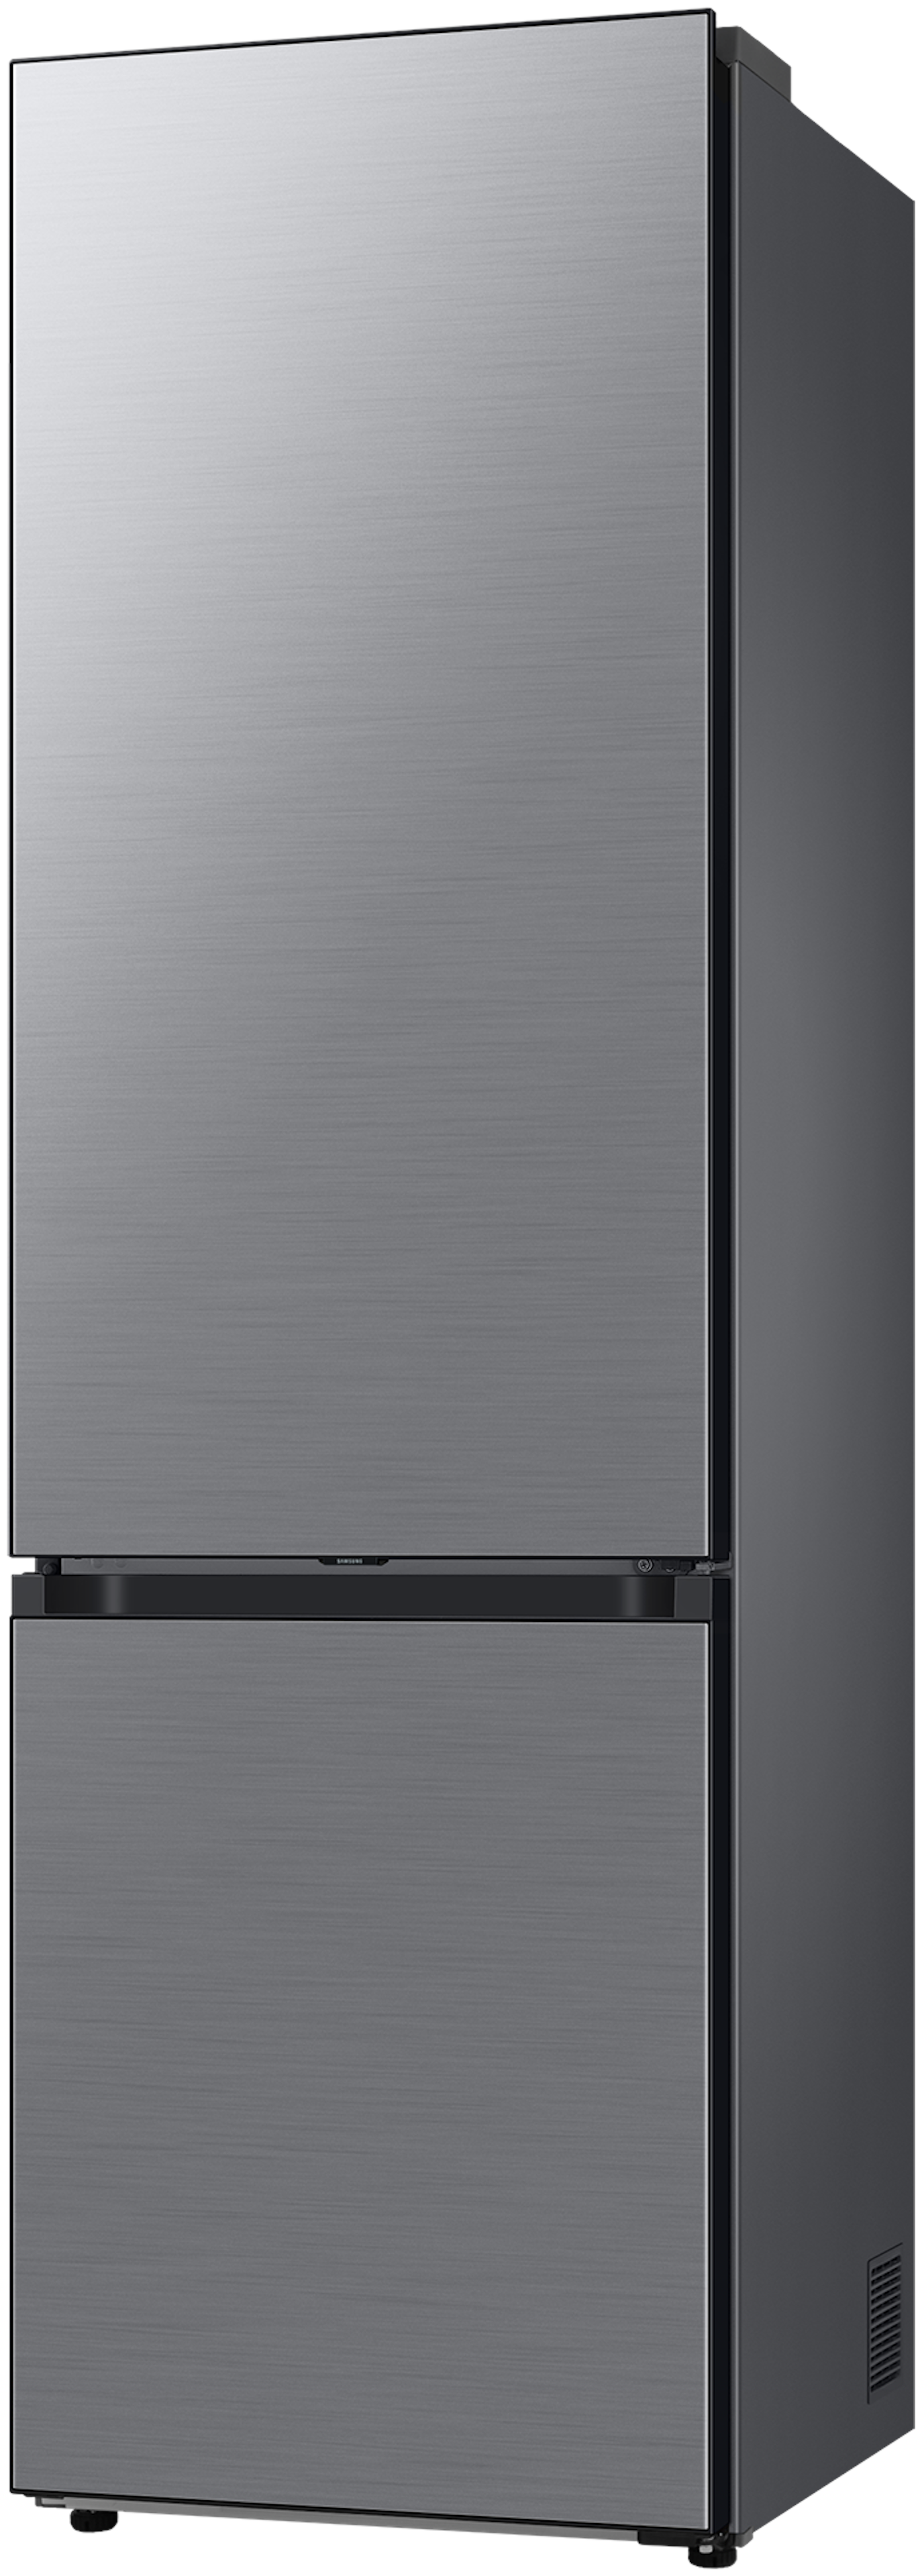 Samsung RB38A7CGTS9/EF vrijstaand koelkast afbeelding 6